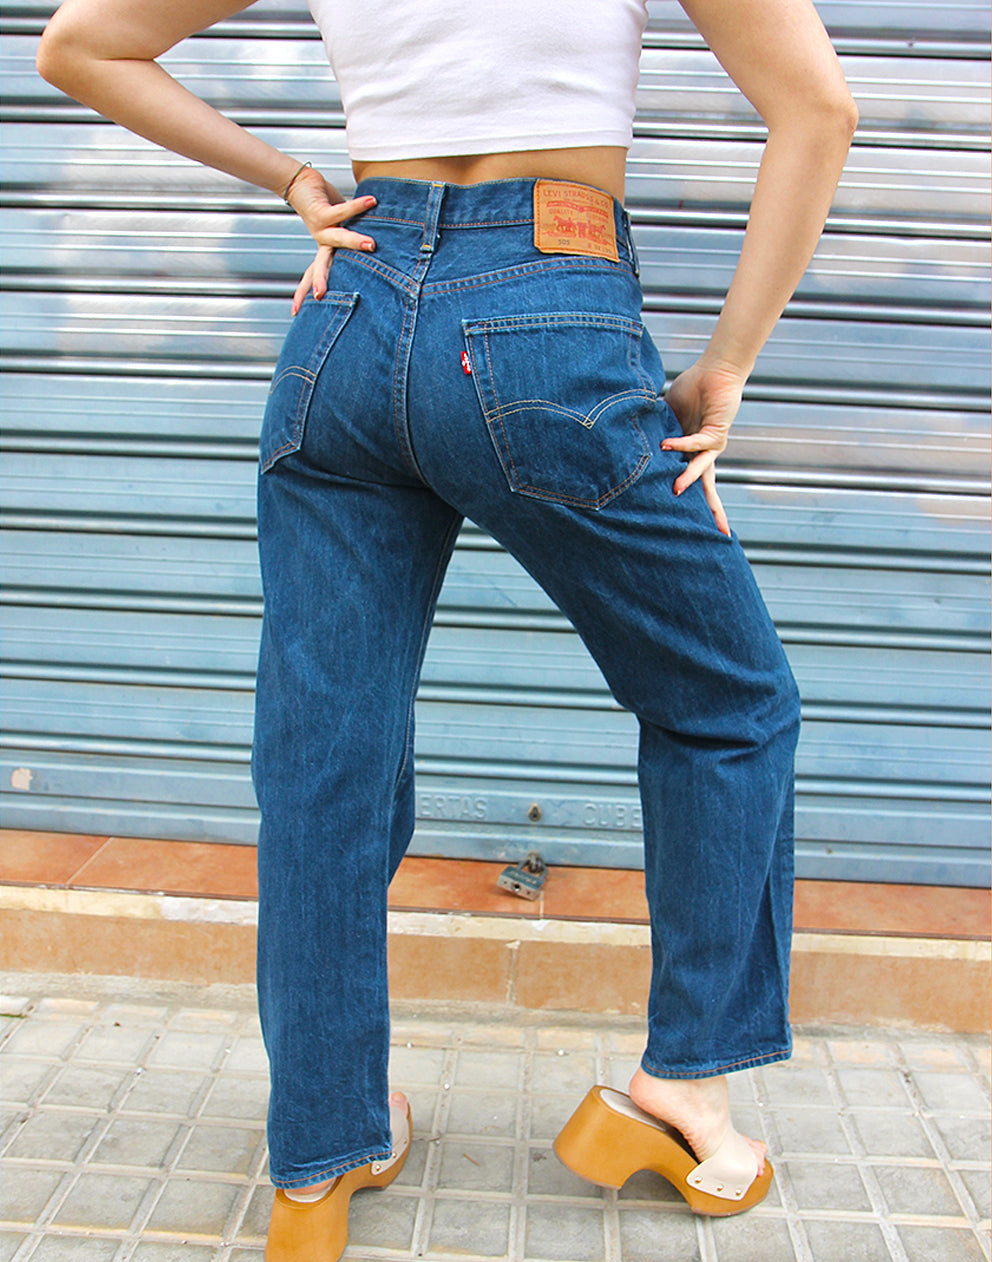 Original Levi's 505 Classic Blue Denim High Rise Jeans 30